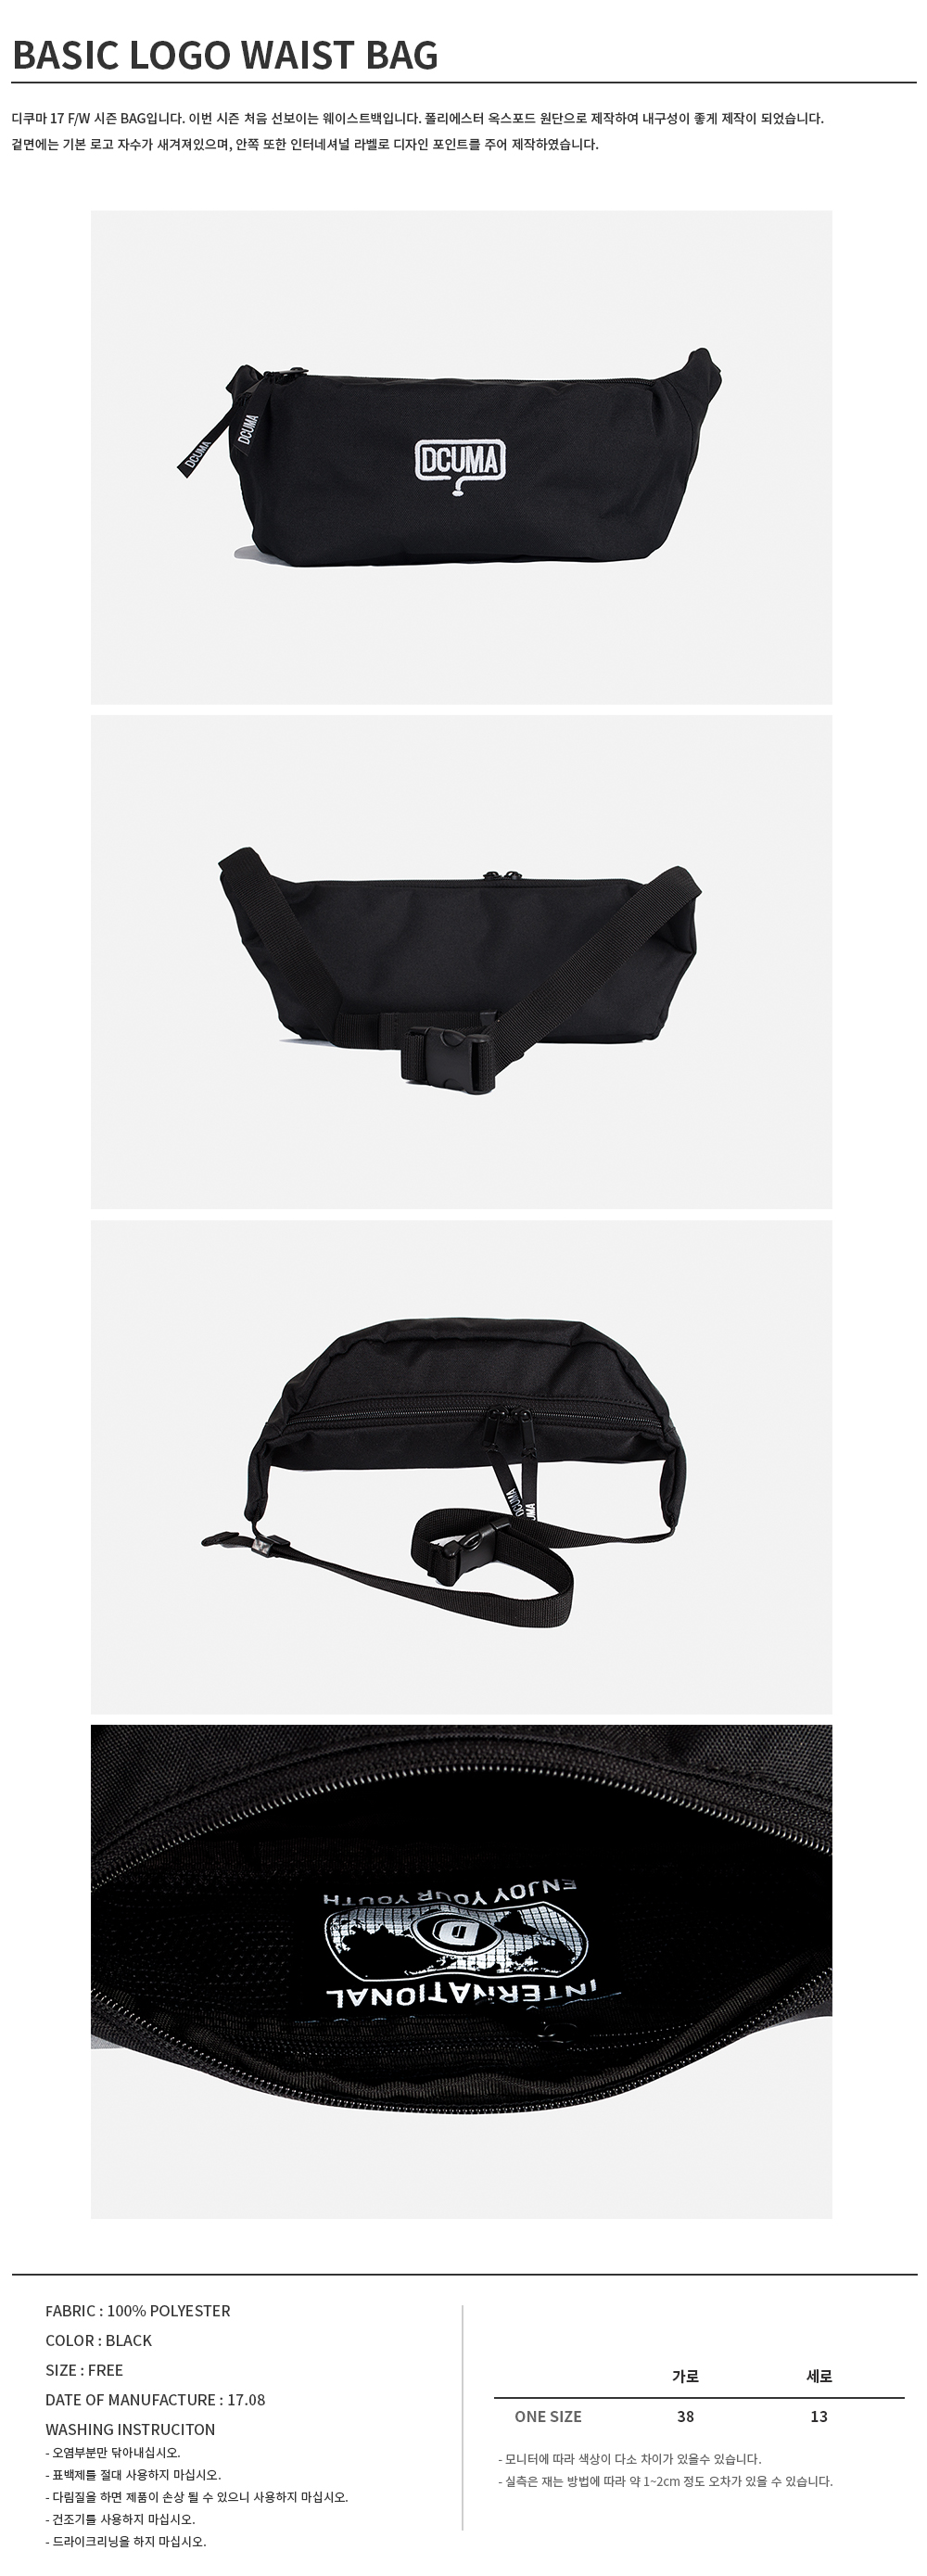 fw17_basic logo waist bag_black_detail copy.JPG